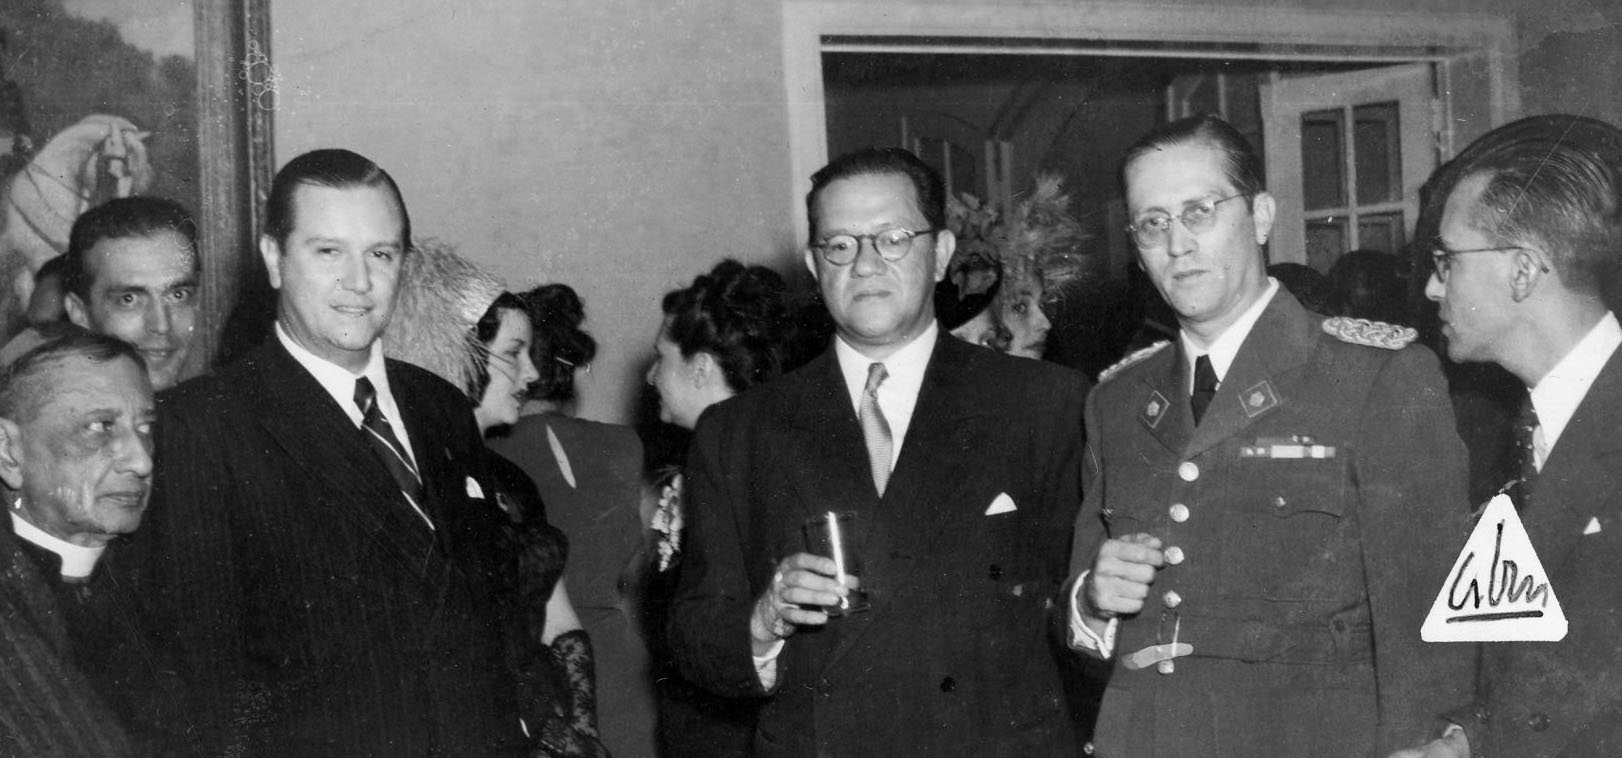 Recepción en la embajada de Colombia, aparecen Rafael Caldera y el coronel Carlos Delgado Chalbaud. 20 de julio de 1949.